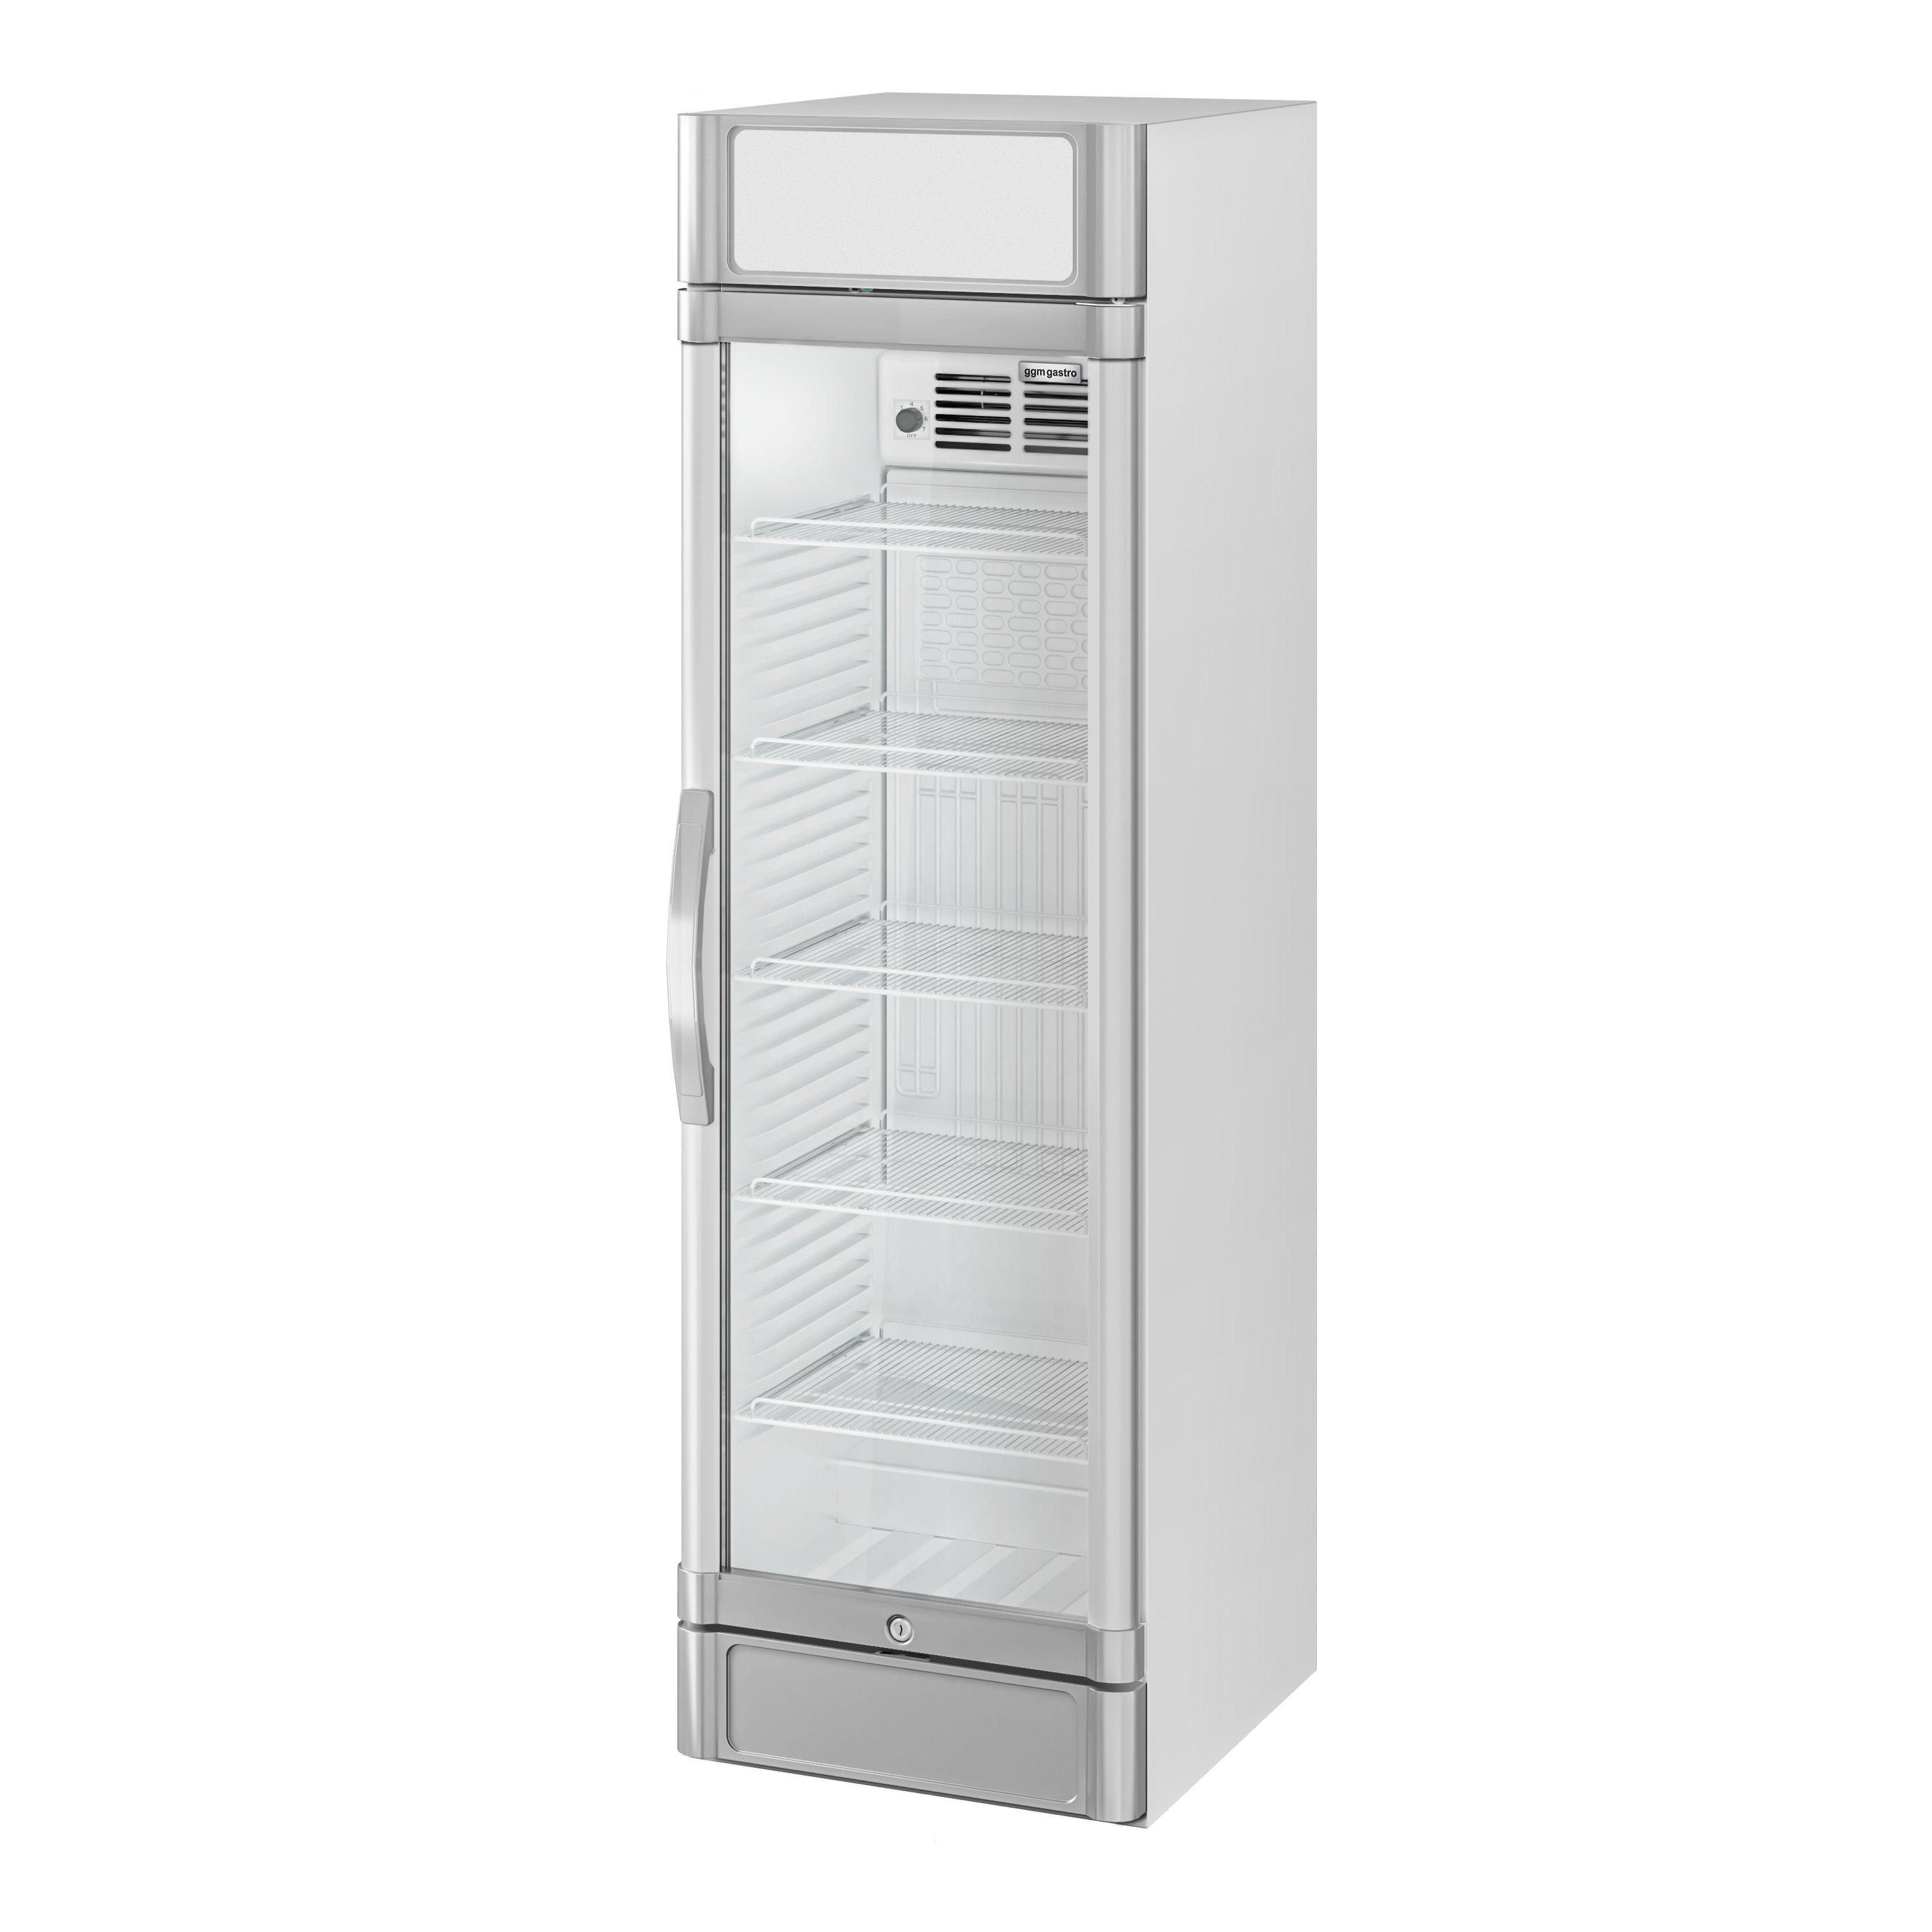 Flaskekøleskab - 347 liter - Hvid / Grå